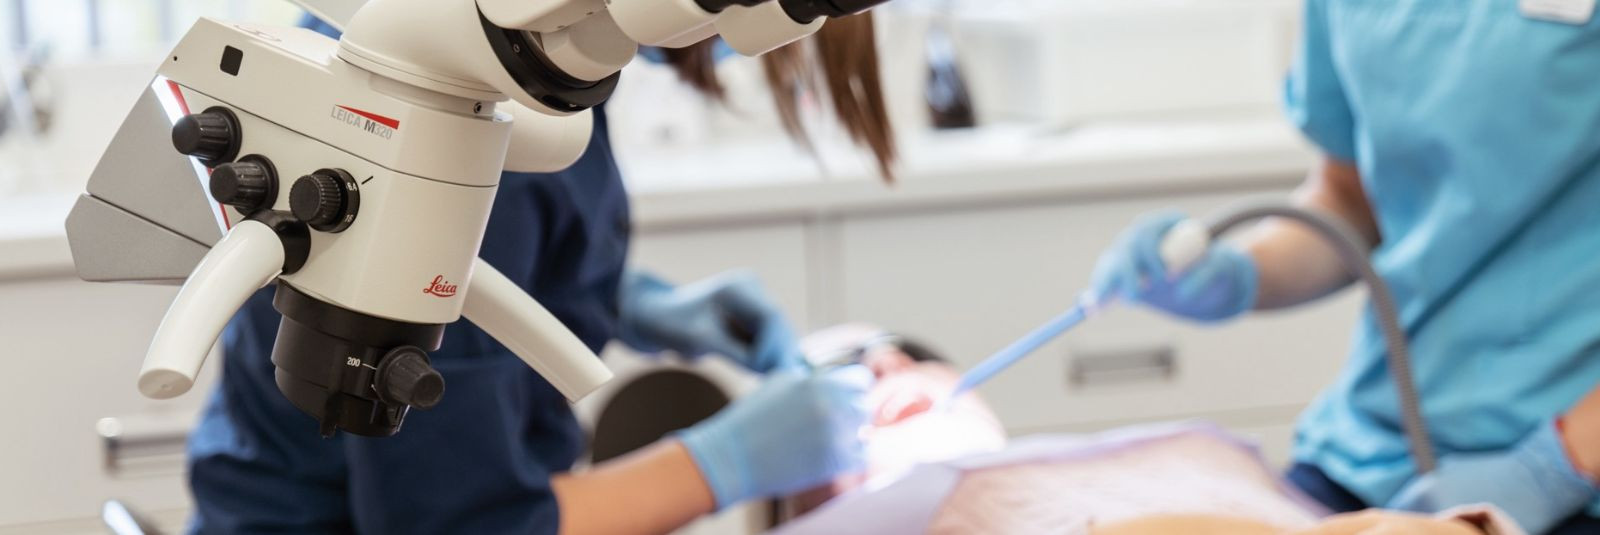 Kui oled silmitsi erakorralise hambaraviprobleemiga, võib see olla hirmutav olukord. Õnneks pakume Sakala Hambaravis kiiret ja professionaalset esmaabi, et leev